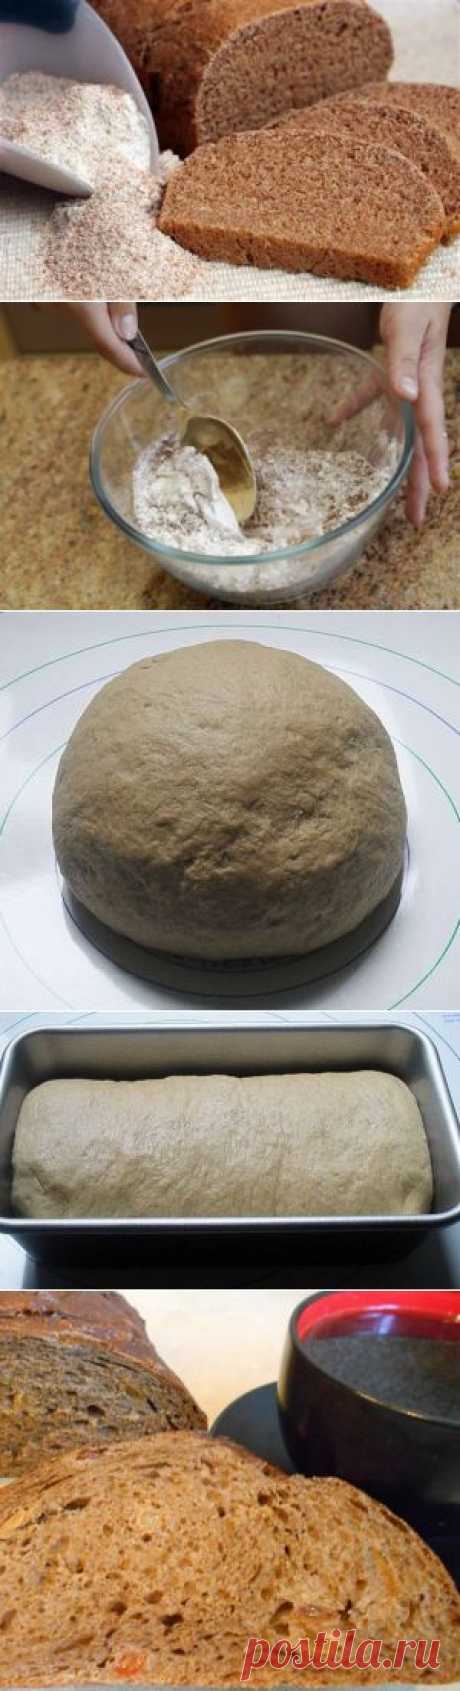 Хлеб без дрожжей и закваски на кефире, испеченный в духовке – пшенично - ржаной, домашний простой рецепт с фото